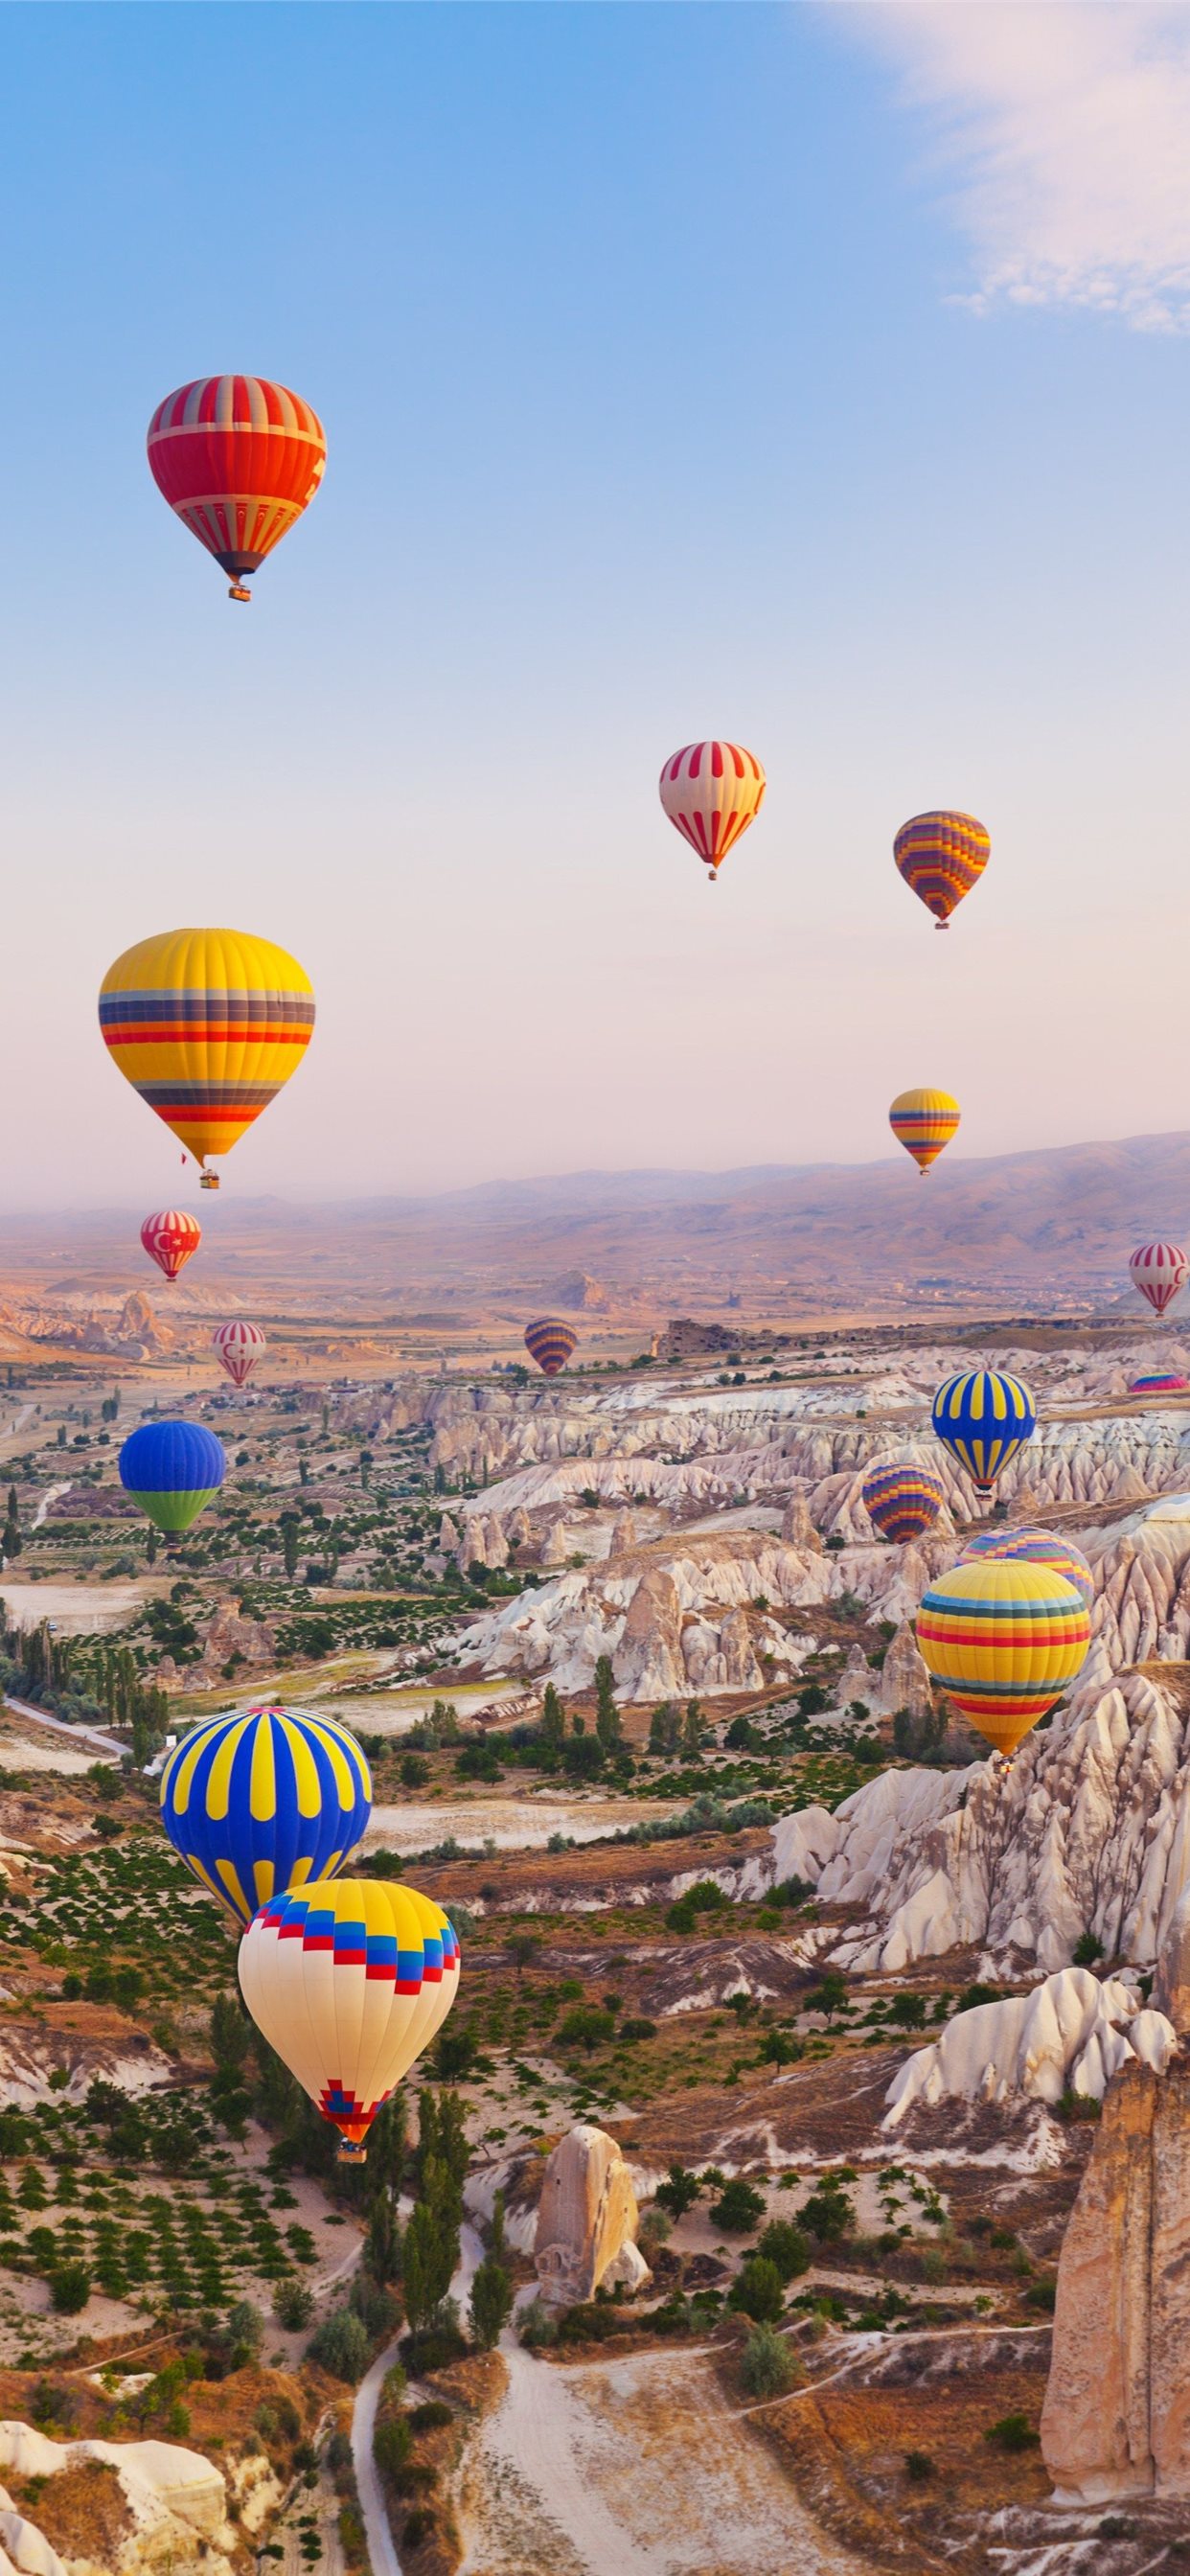 Du lịch Cappadocia sẽ đưa bạn vào một chuyến phiêu lưu tuyệt vời, được tráng lệ bởi vẻ đẹp tuyệt đẹp của các mỏ đá và những chuyến đi trên khinh khí cầu giữa đám mây. Quên đi những căn phòng khách sạn nhàm chán và trải nghiệm một kỳ nghỉ đáng nhớ với du lịch Cappadocia.